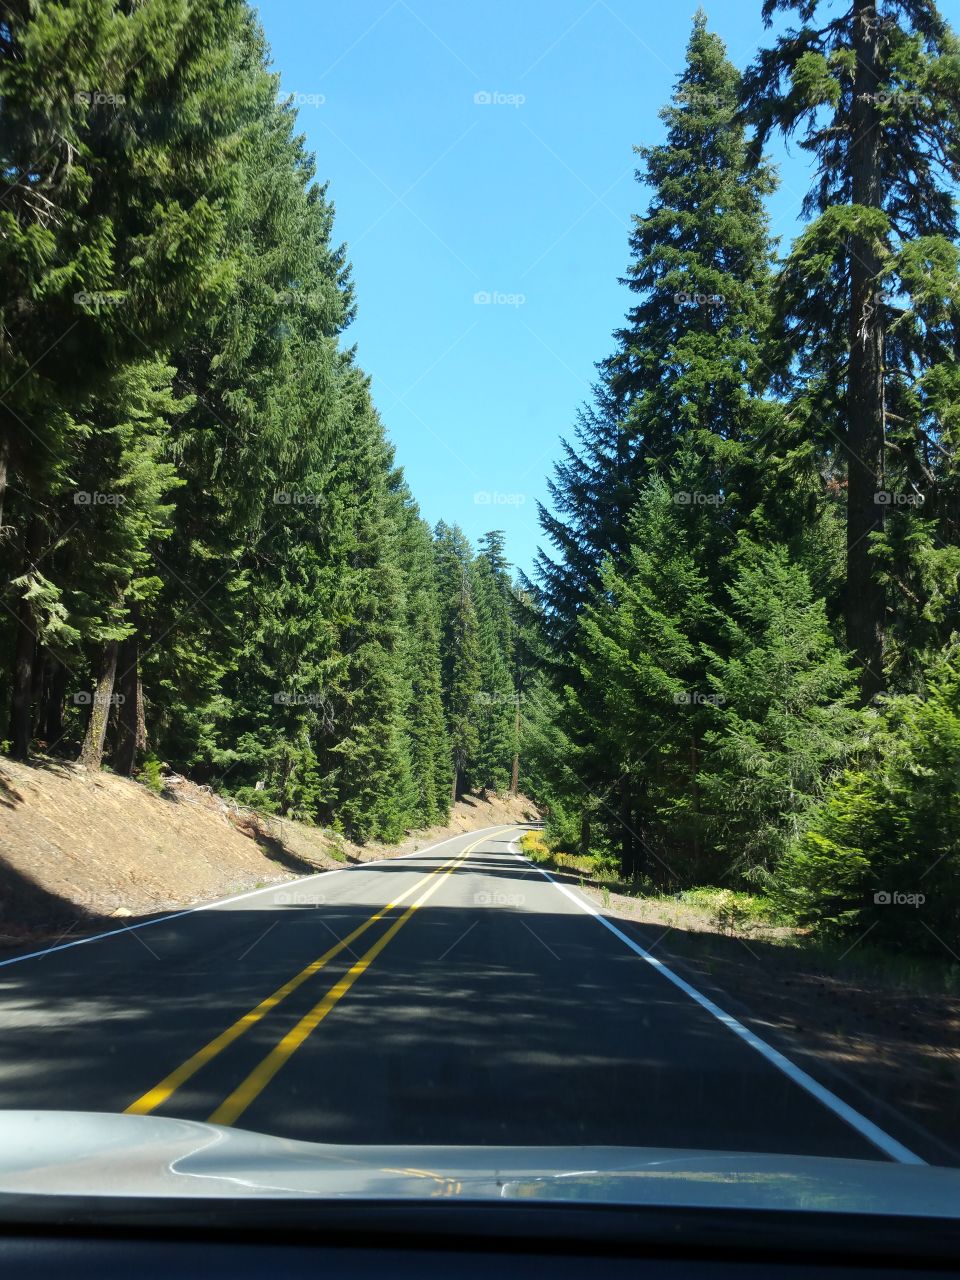 Road, No Person, Asphalt, Highway, Tree